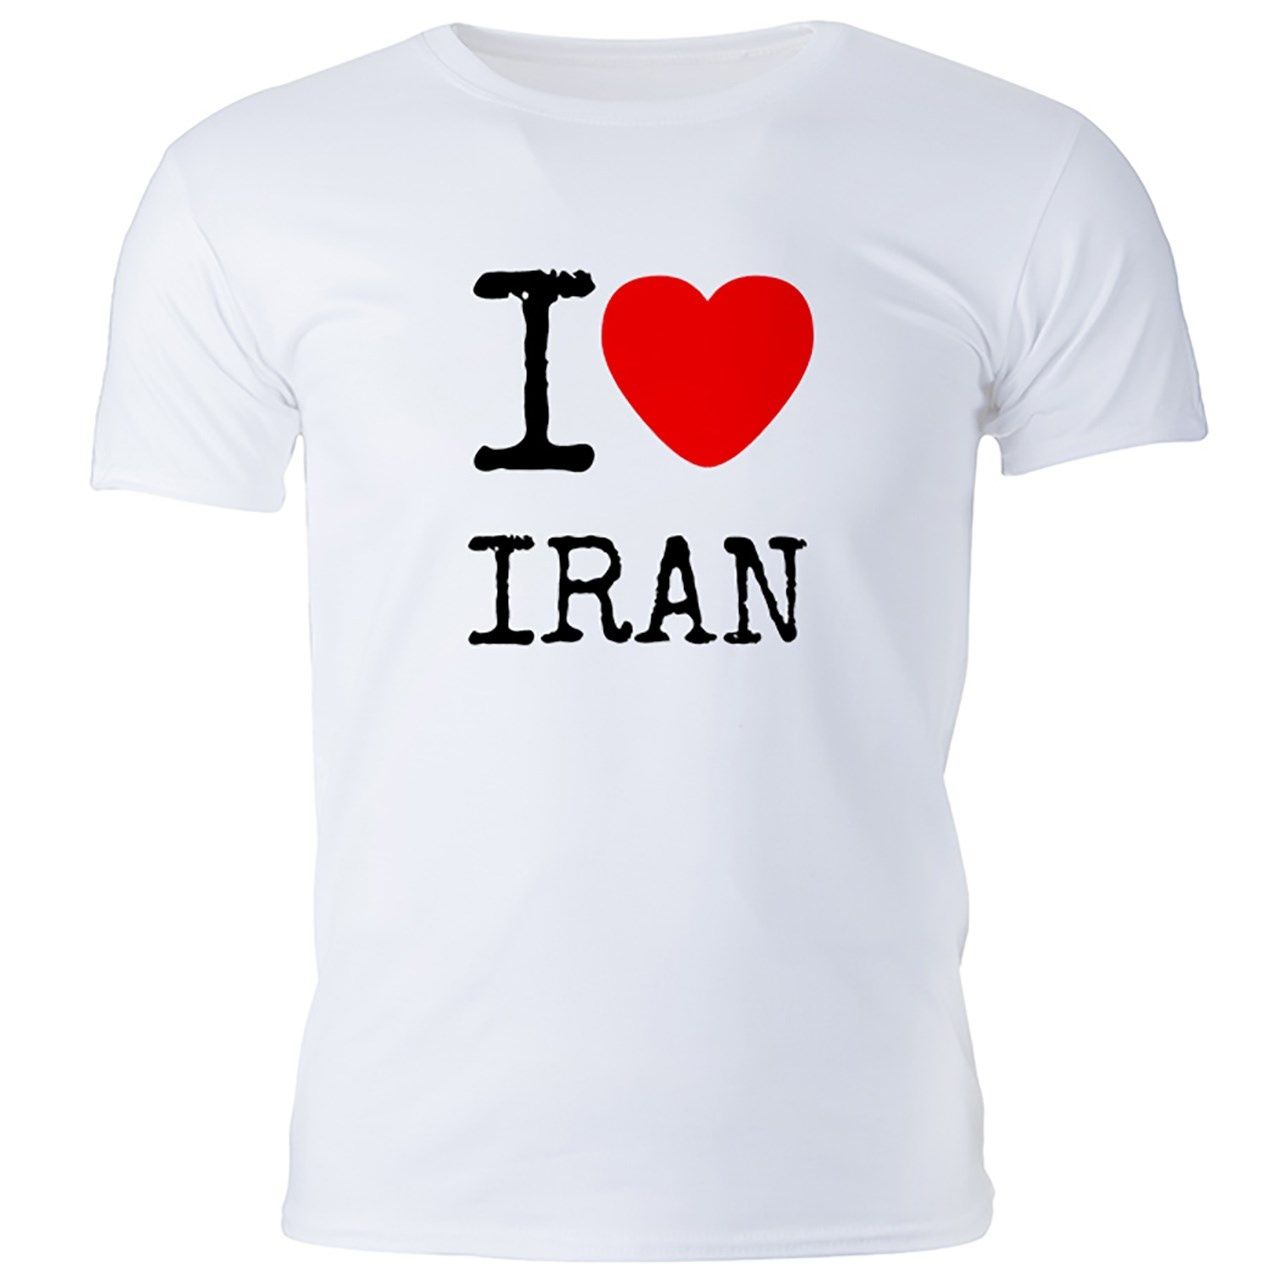 تی شرت مردانه گالری واو طرح ایران کد CT10115 -  - 1